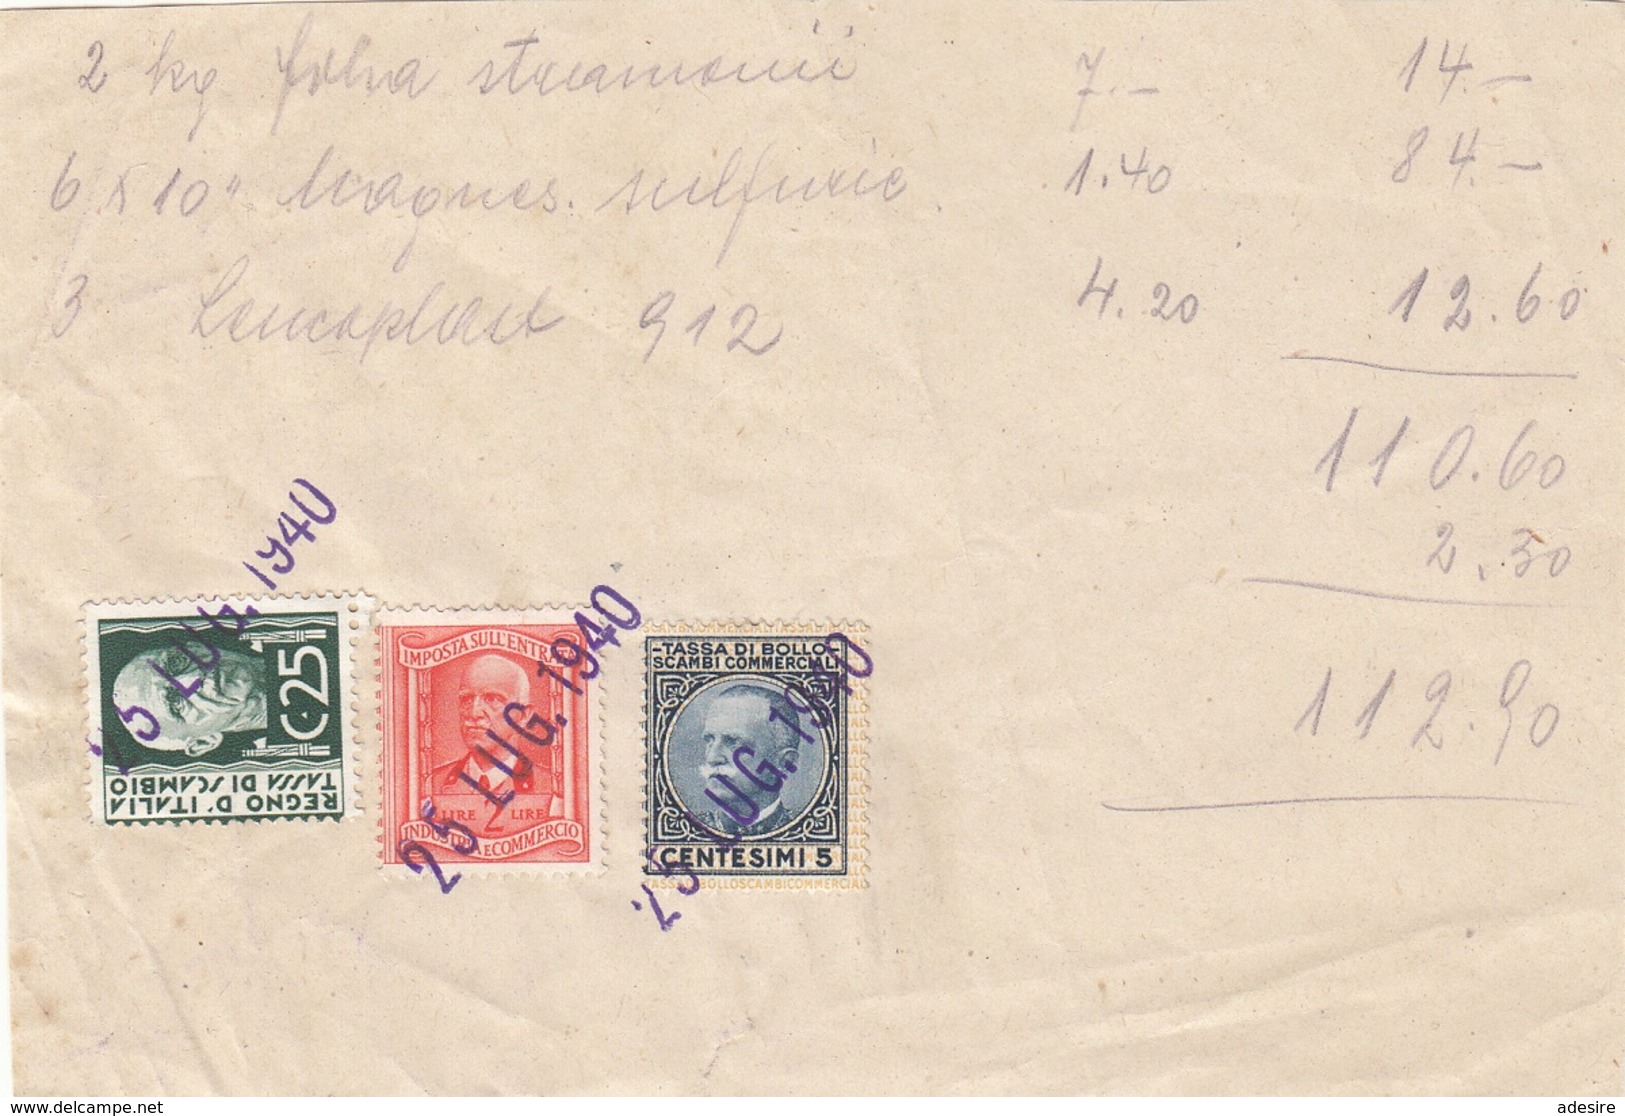 ITALIEN 1940 - 5 + 25 C + 2 L Auf Briefstück - Postage Due